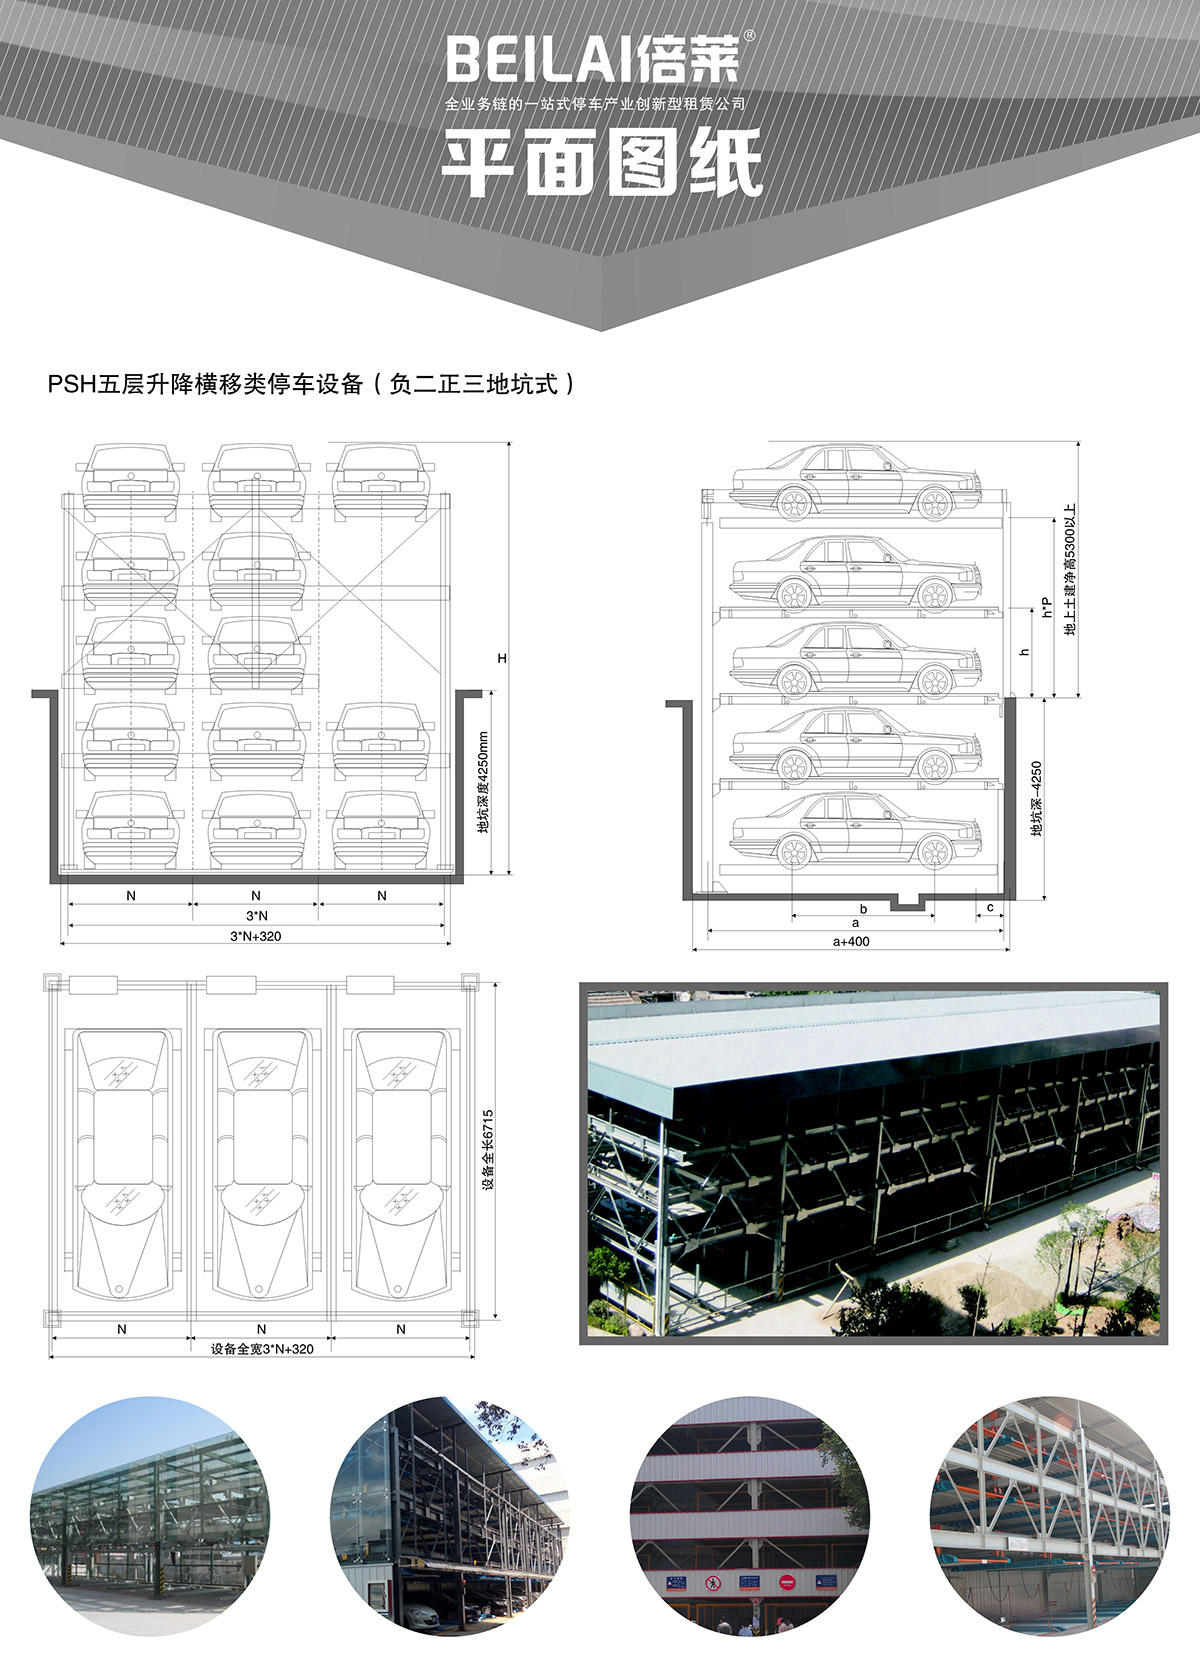 四川成都负二正三地坑式PSH5D2五层升降横移类机械式立体车库设备平面图纸.jpg